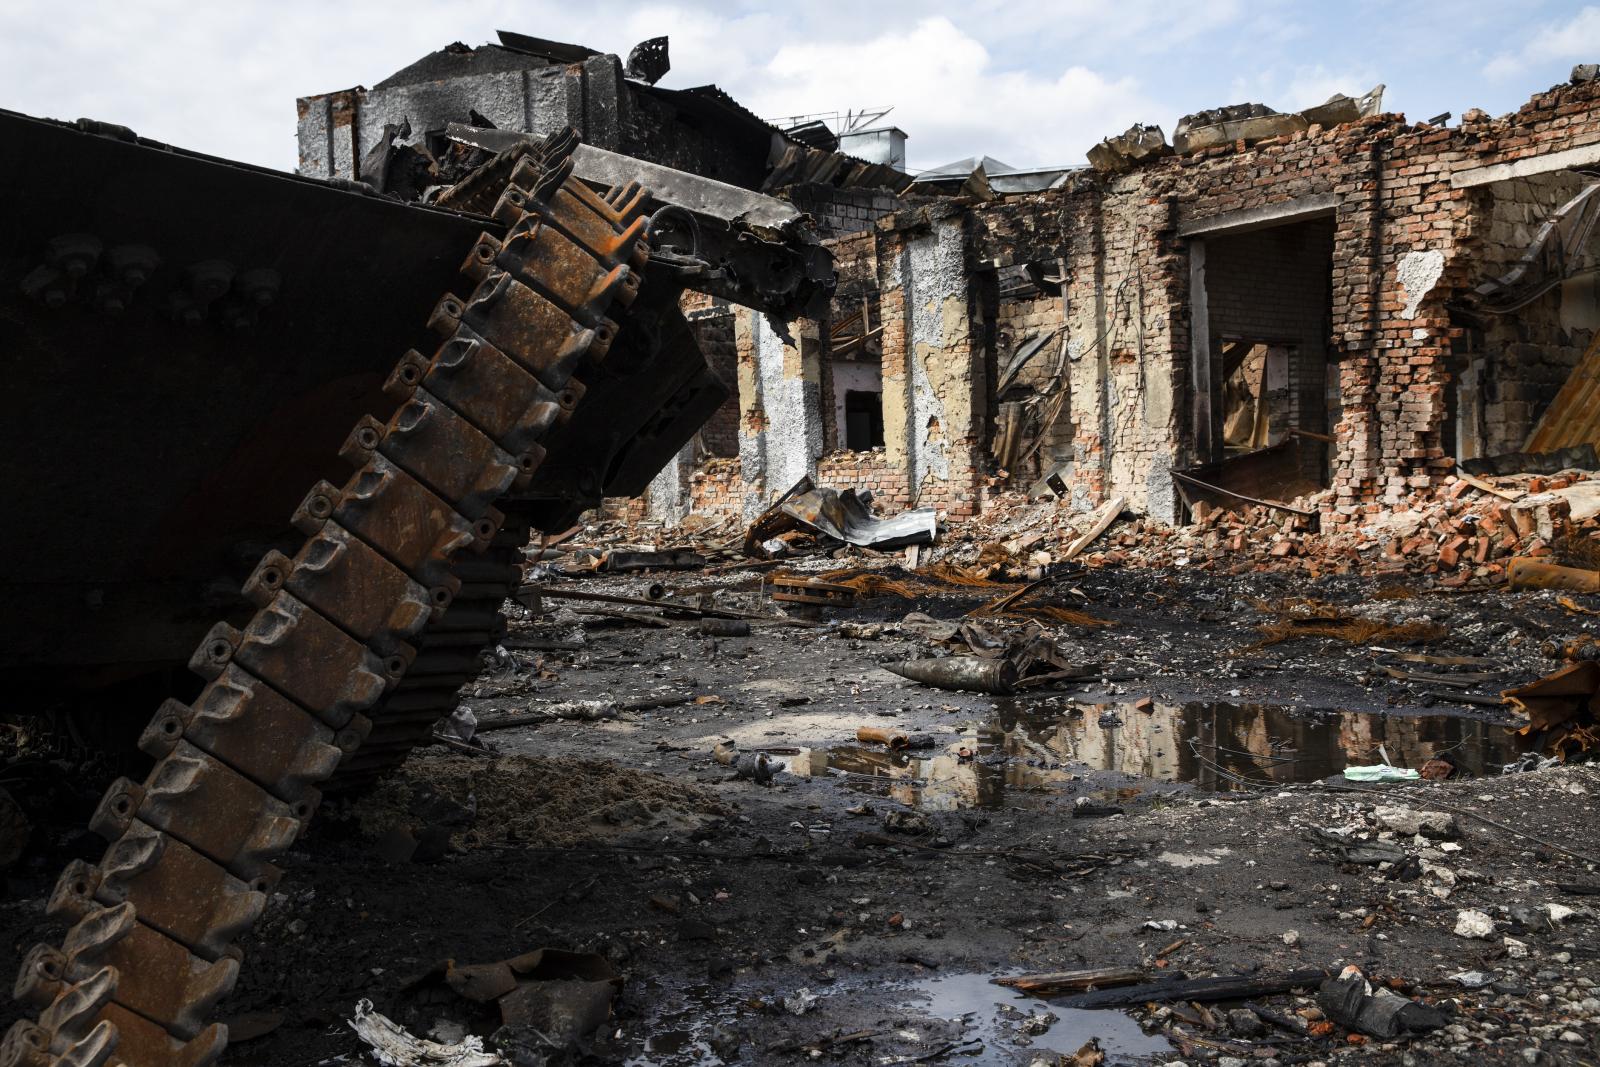 In primo piano i rottami arrugginiti di un carrarmato, con i cingoli in evidenza; sullo sfondo rovine di abitazioni devastate dalla guerra